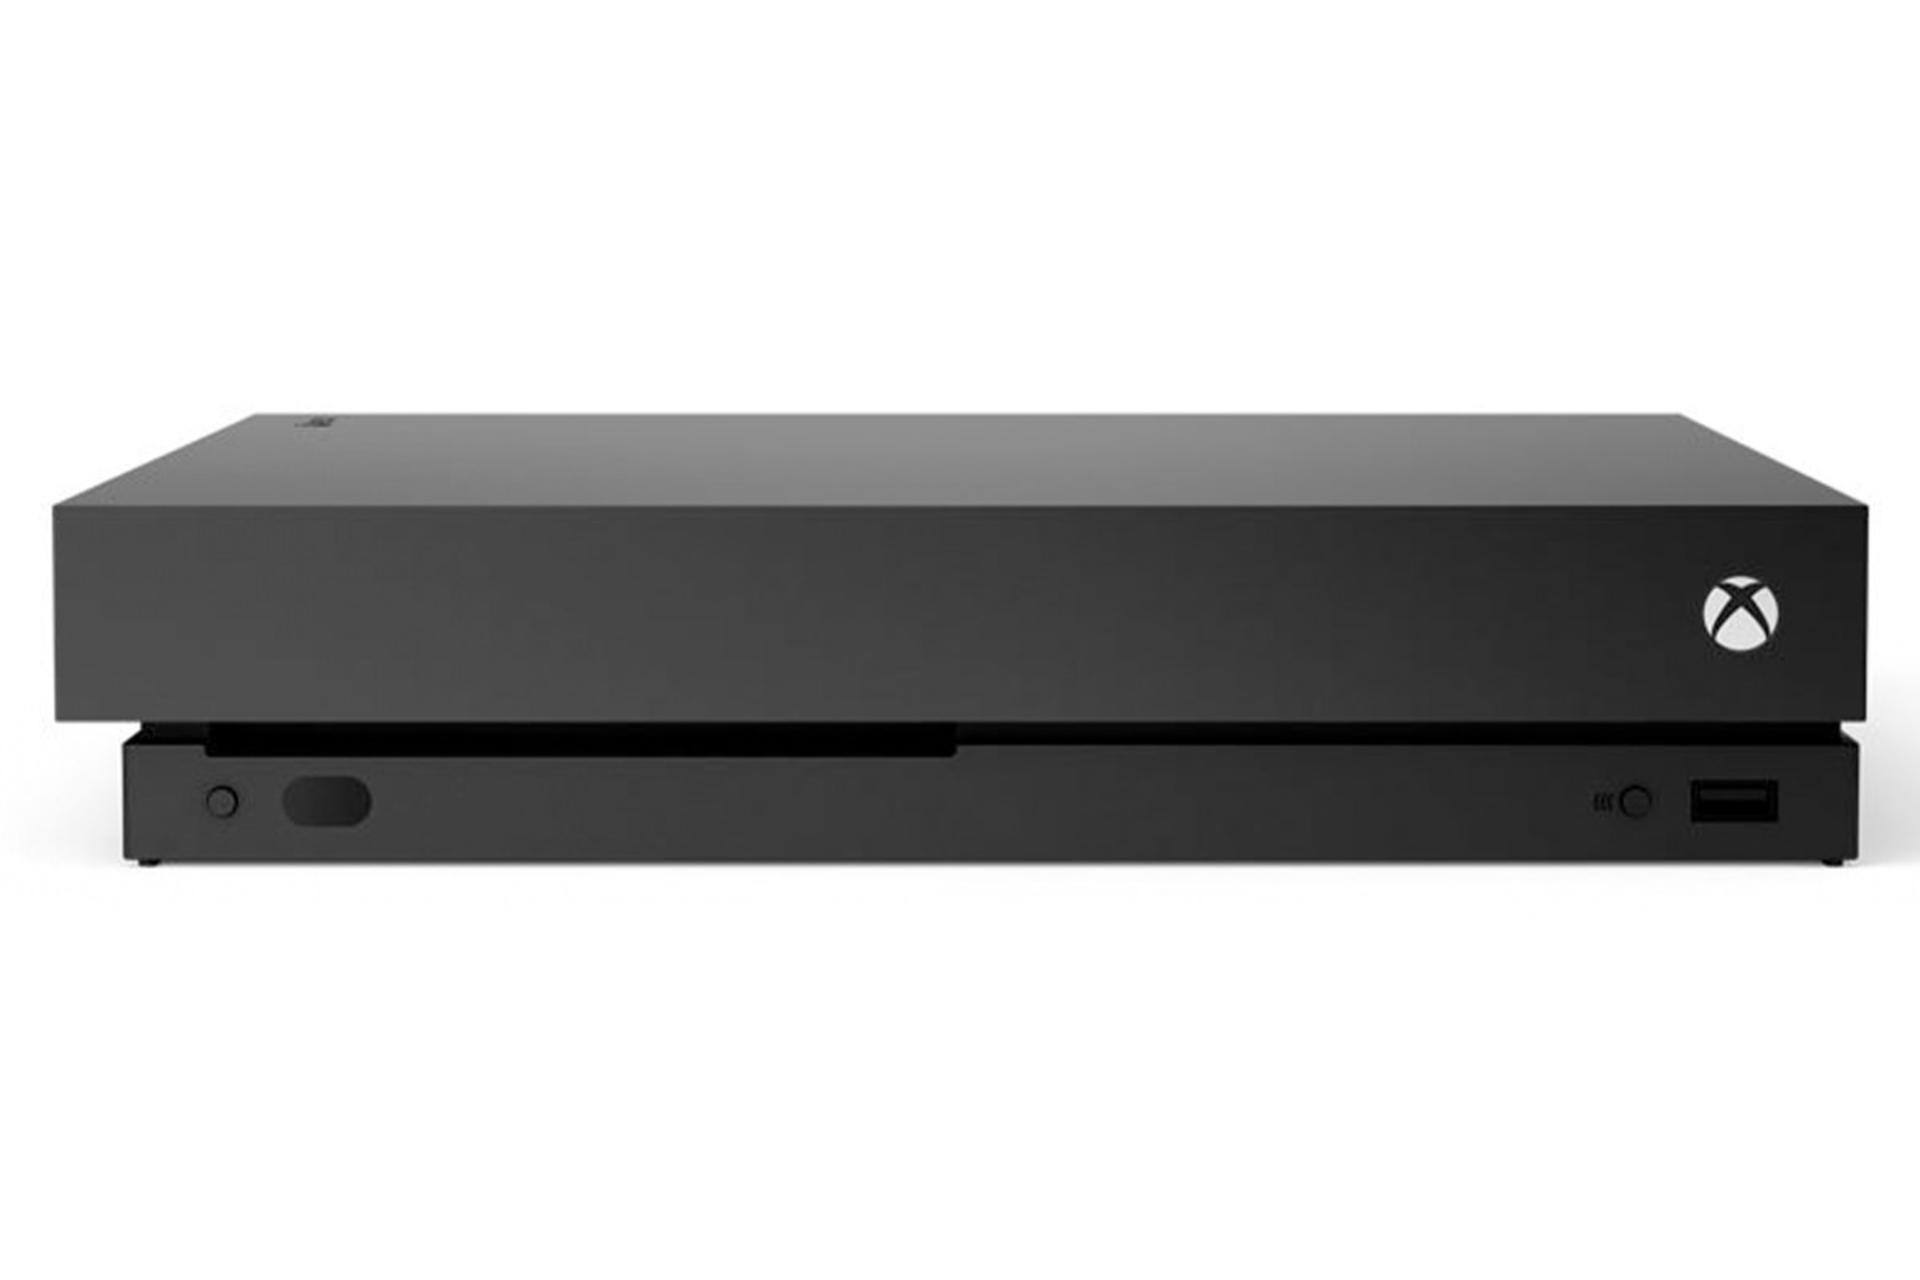 ایکس باکس وان ایکس مایکروسافت نمای جلو و پورت / Microsoft Xbox One X